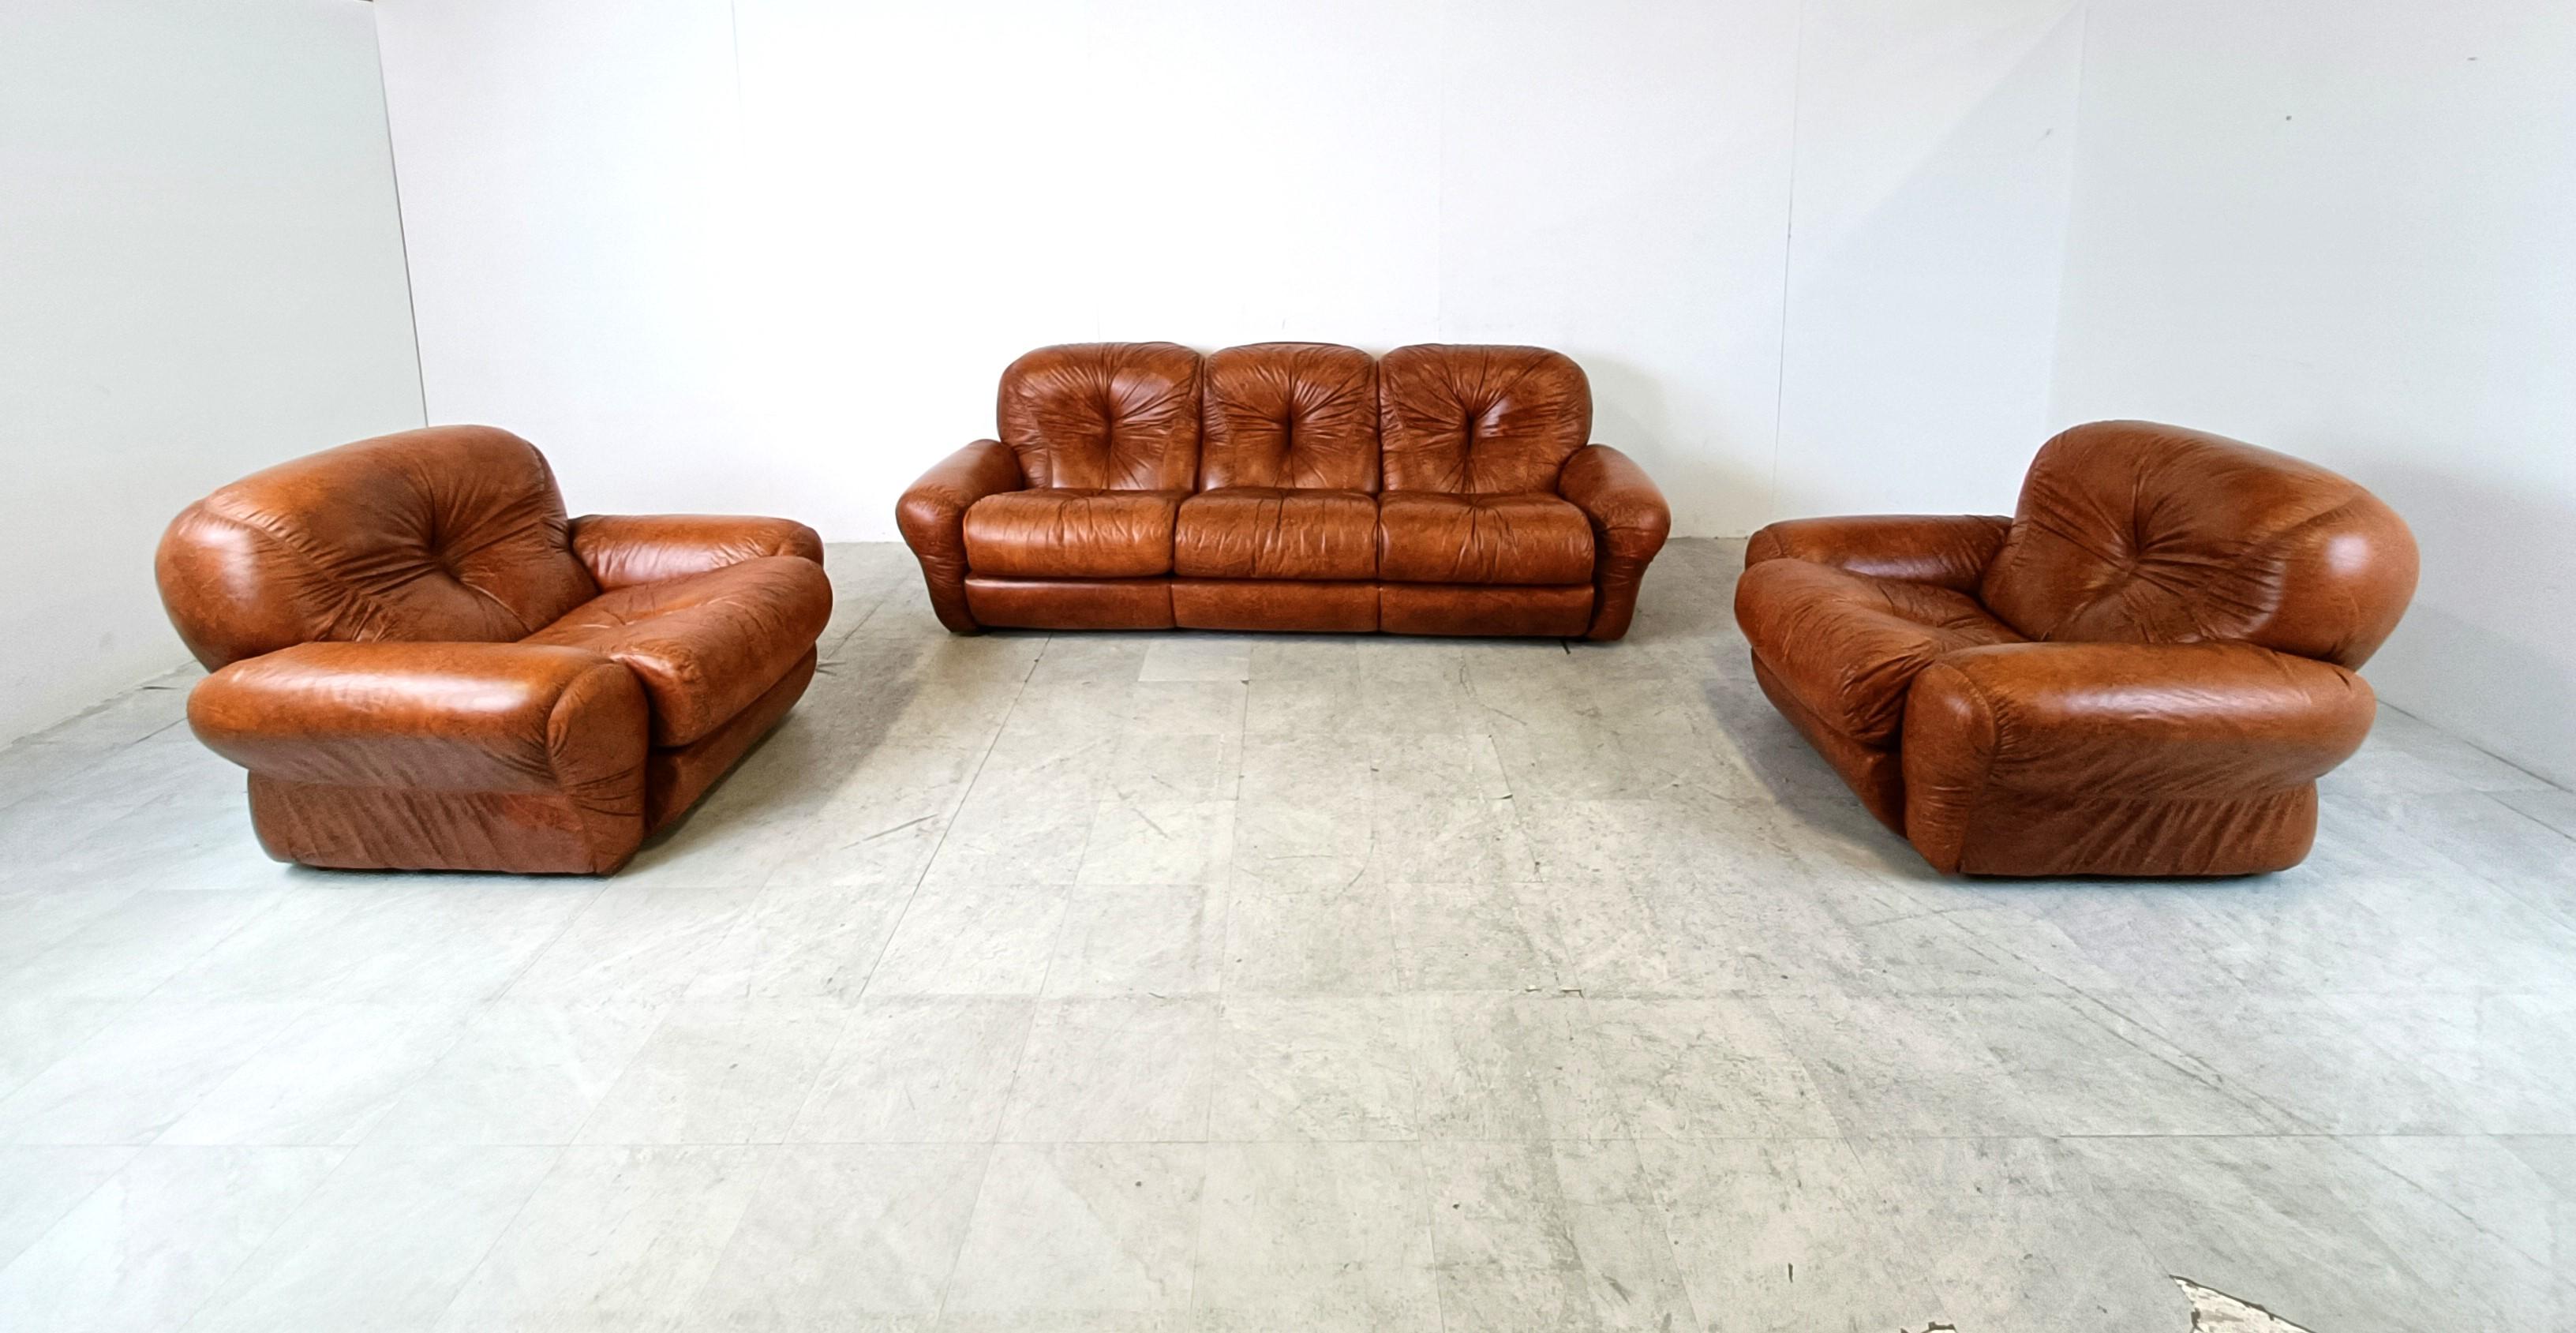 Sofagarnitur aus braunem Kunstleder aus der Mitte des Jahrhunderts, entworfen in Italien in den 1970er Jahren.

Sehr dicke und bequeme Kissen mit einem eleganten Design.

Die Garnitur besteht aus einem dreisitzigen Sofa und zwei Sesseln

Guter